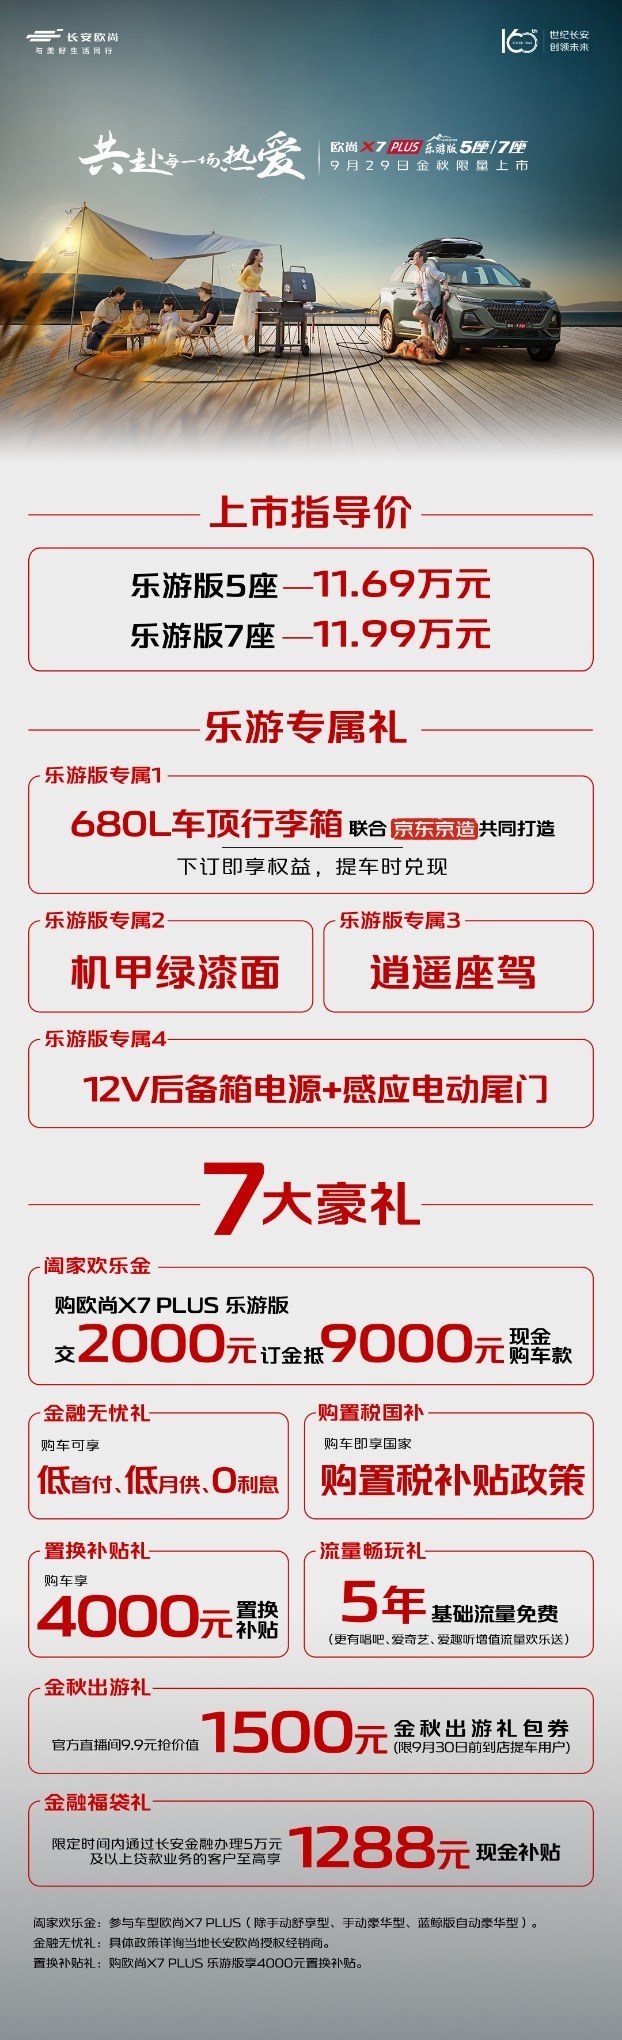 11.69万元起售 欧尚 X7 PLUS乐游版上市